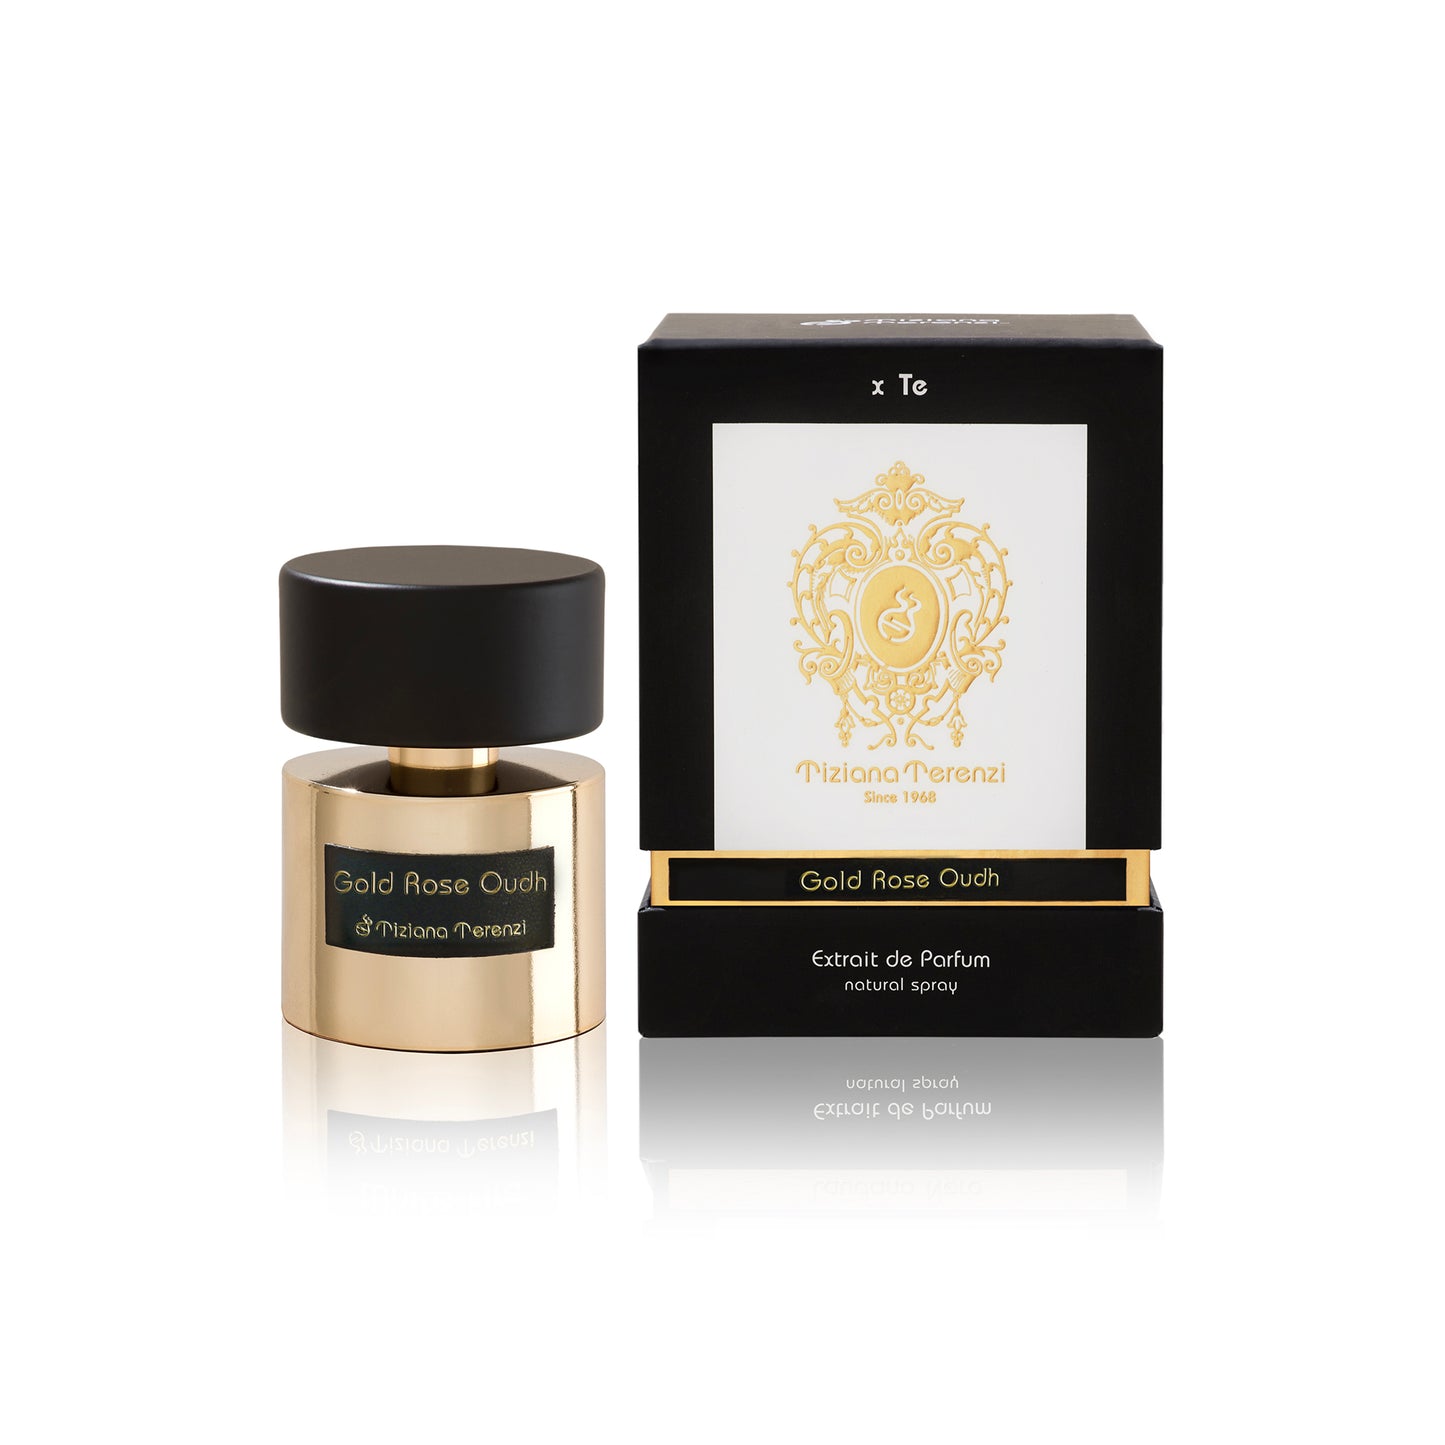 Gold Rose Oudh 1.5ml Sample Vial - Extrait de Parfum